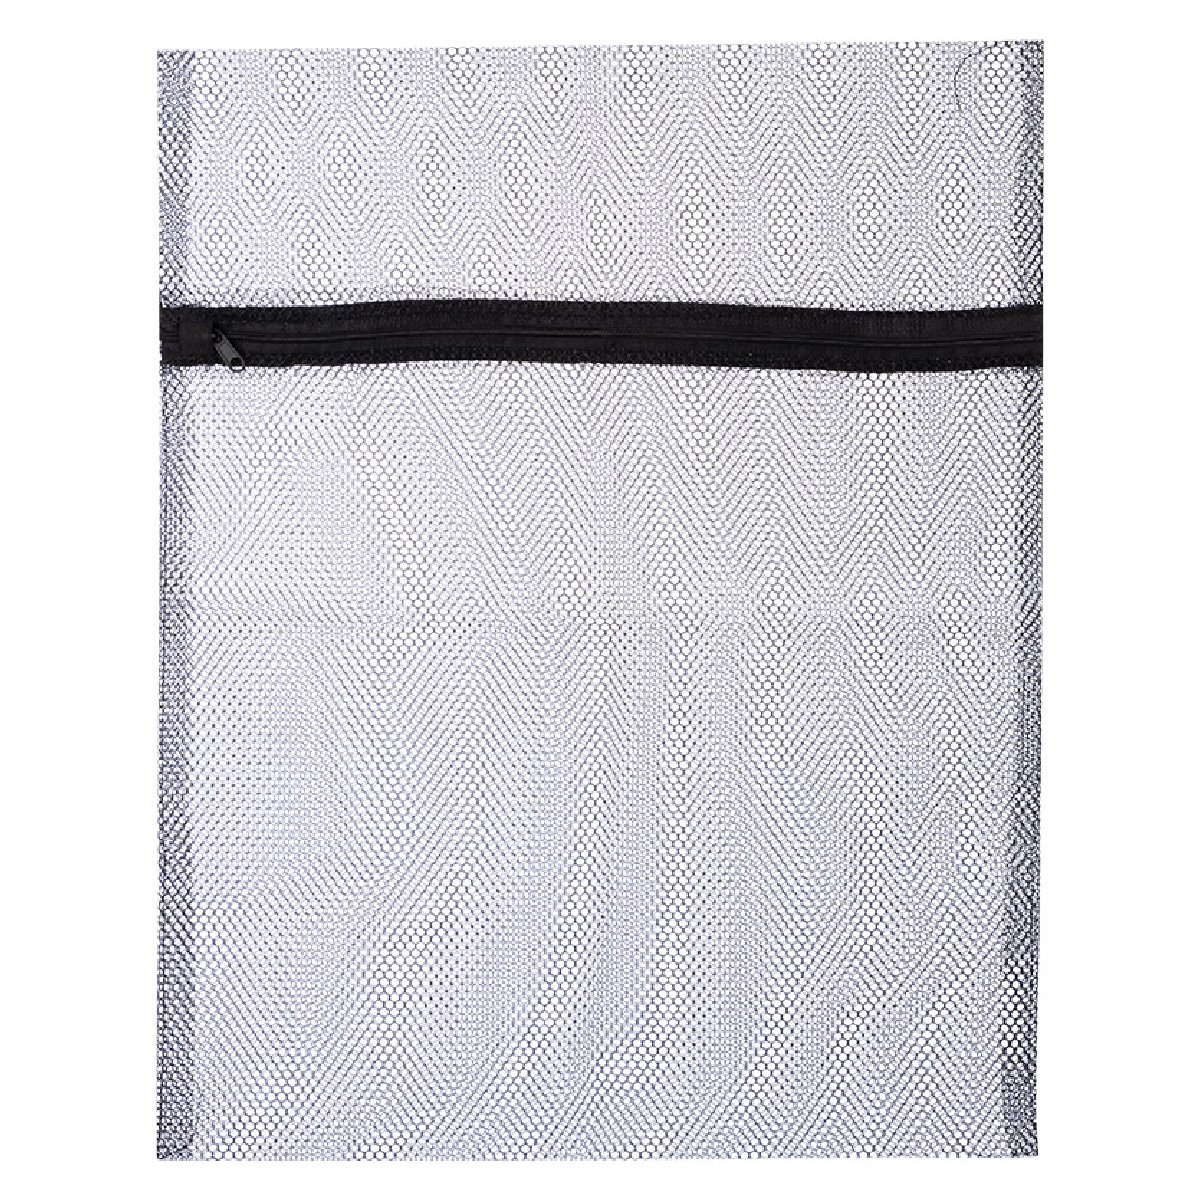 Мешок для стирки белья, 40x50, цвет черный (311129)